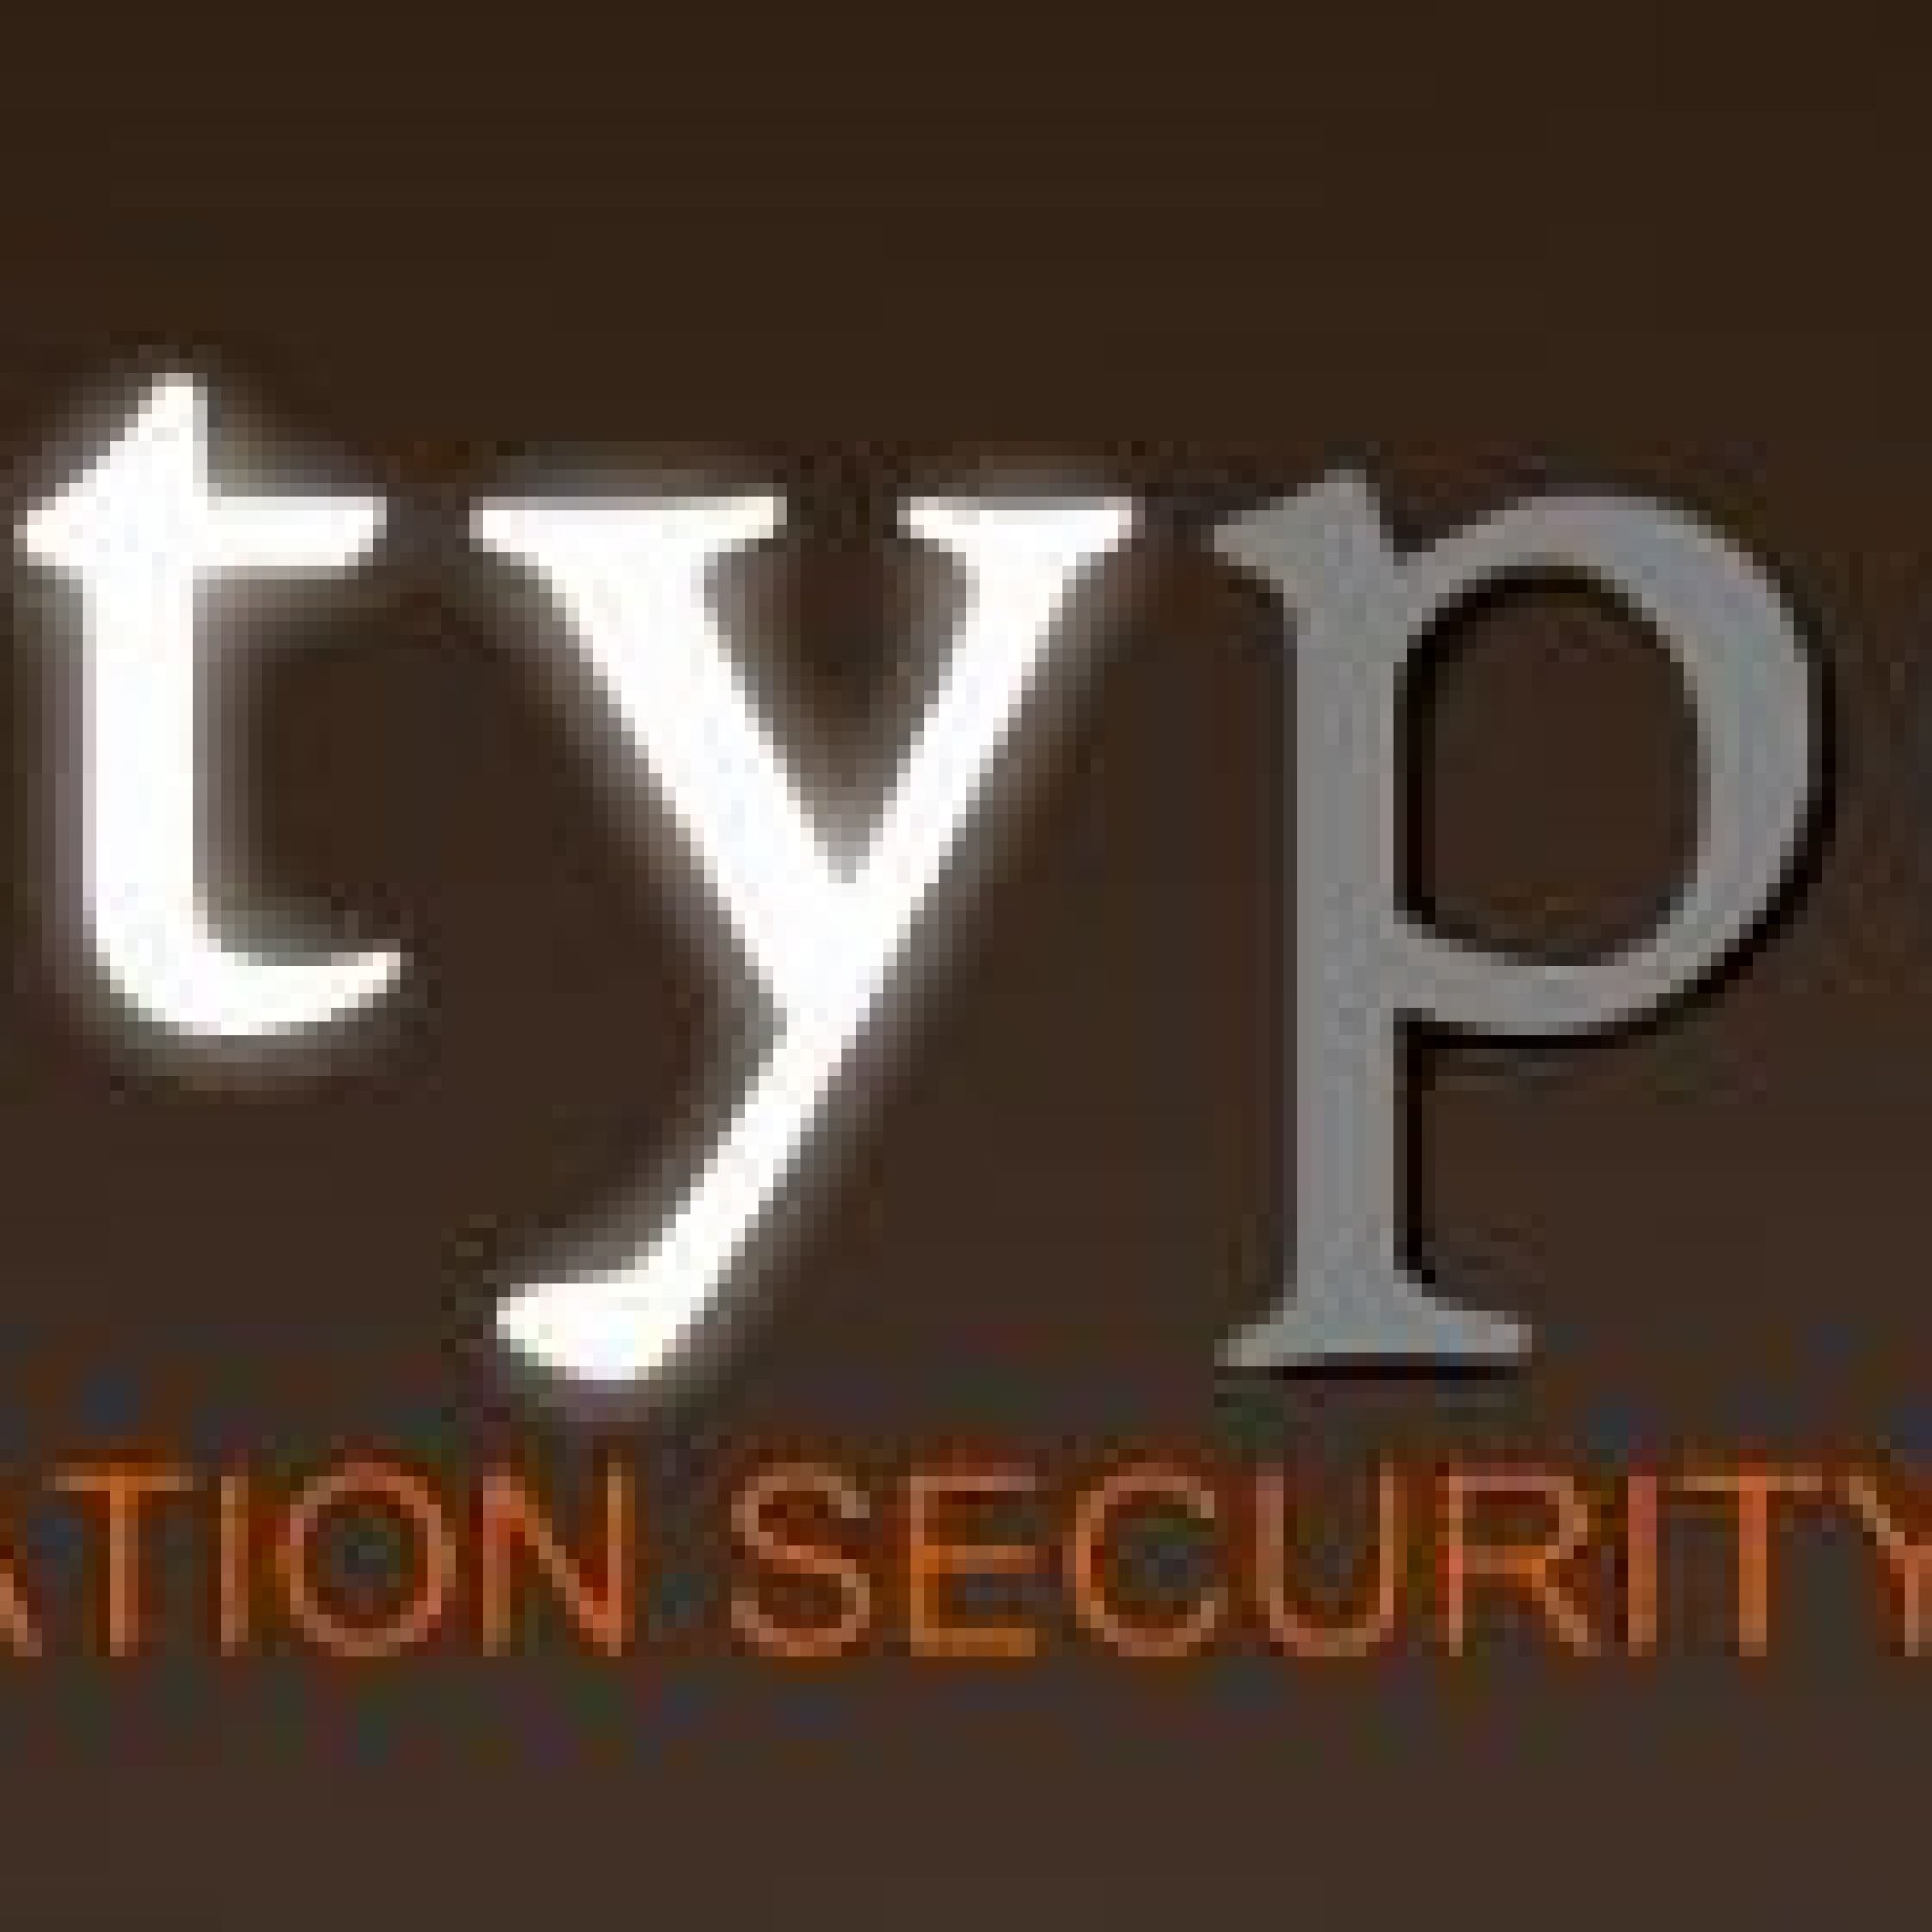 Intypedia: La Enciclopedia Visual Para La Seguridad Informática